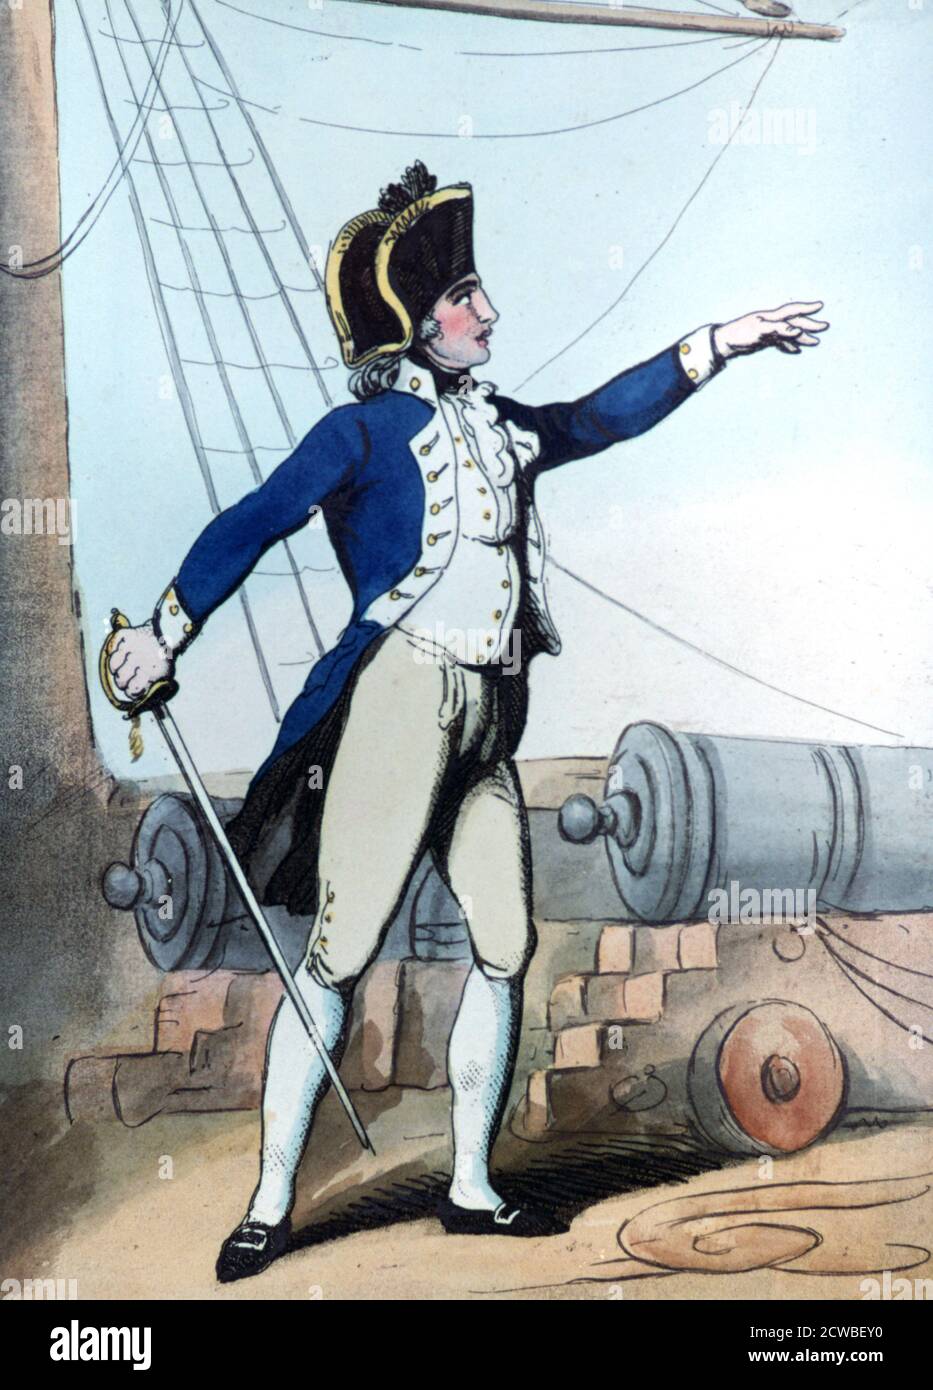 Lieutenant', 1799. Artista: Thomas Rowlandson. Thomas Rowlandson (1756-1827) è stato un artista e caricaturista inglese dell'epoca georgiana, noto per la sua satira politica e la sua osservazione sociale. Foto Stock